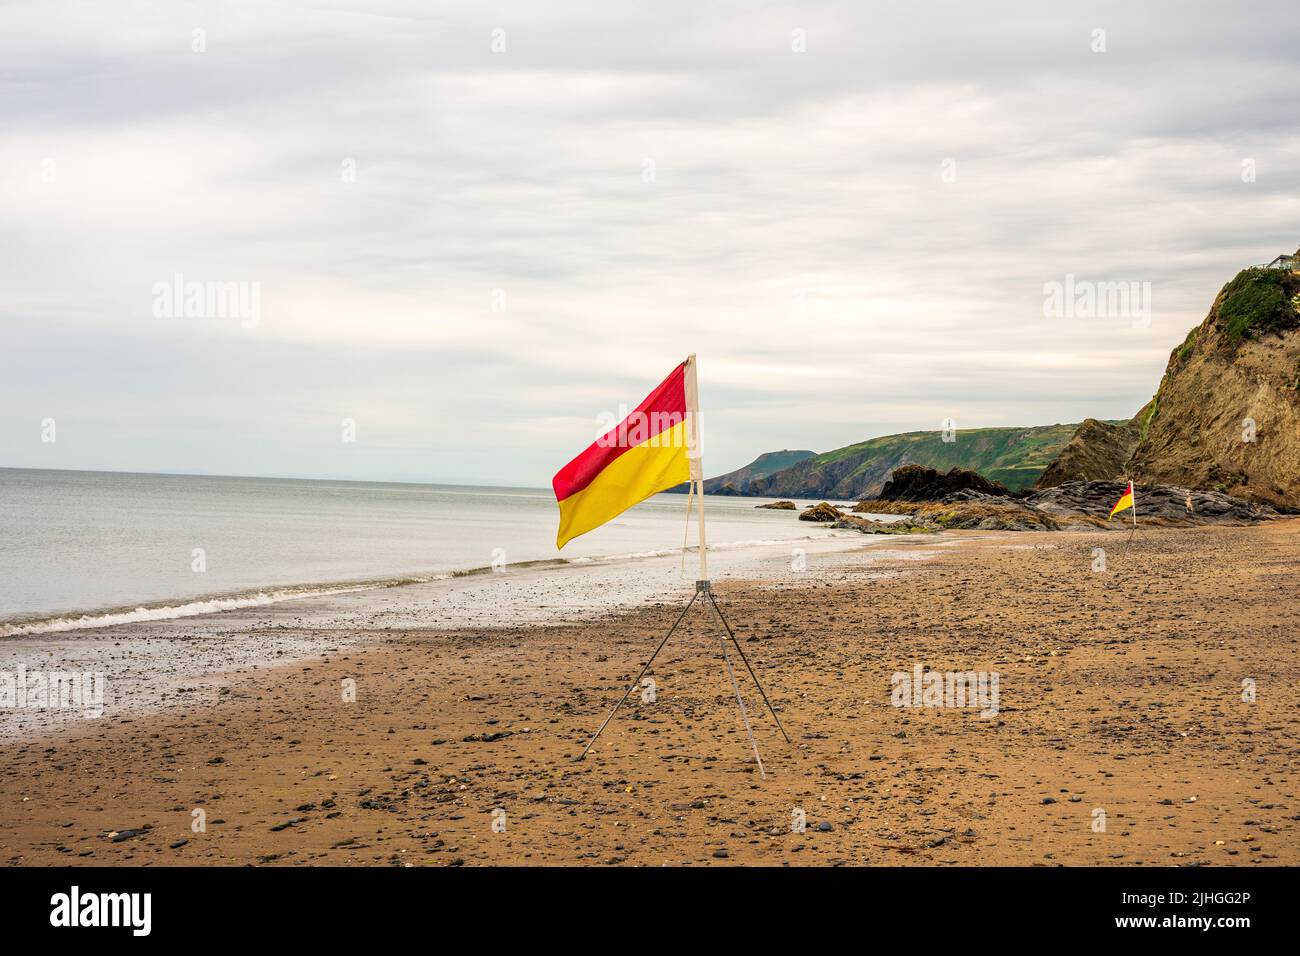 zone de baignade sûre entre les drapeaux rouges et jaunes sur la plage Banque D'Images